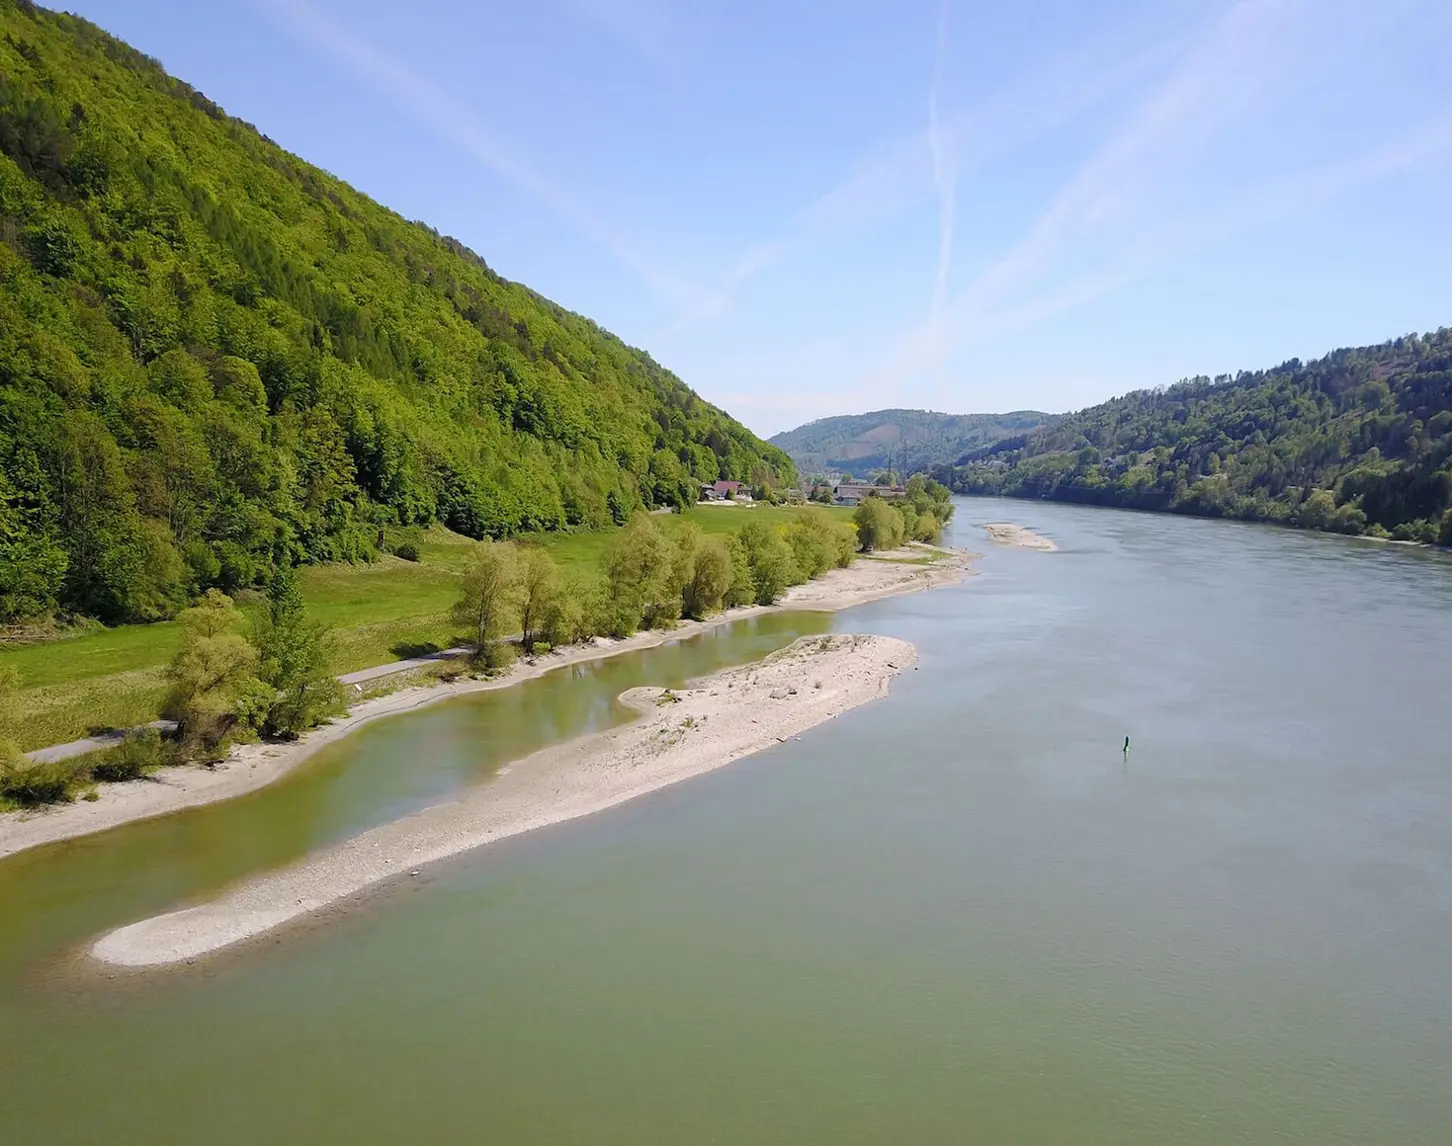 Ein Blick auf die Donau von oben. Rechts und links ist satt grüne Vegetation zu sehen. Im Fluss zeigt sich eine der neuen Kiesstrukturen, die in Zukunft als Fischlaichplätze dienen werden.